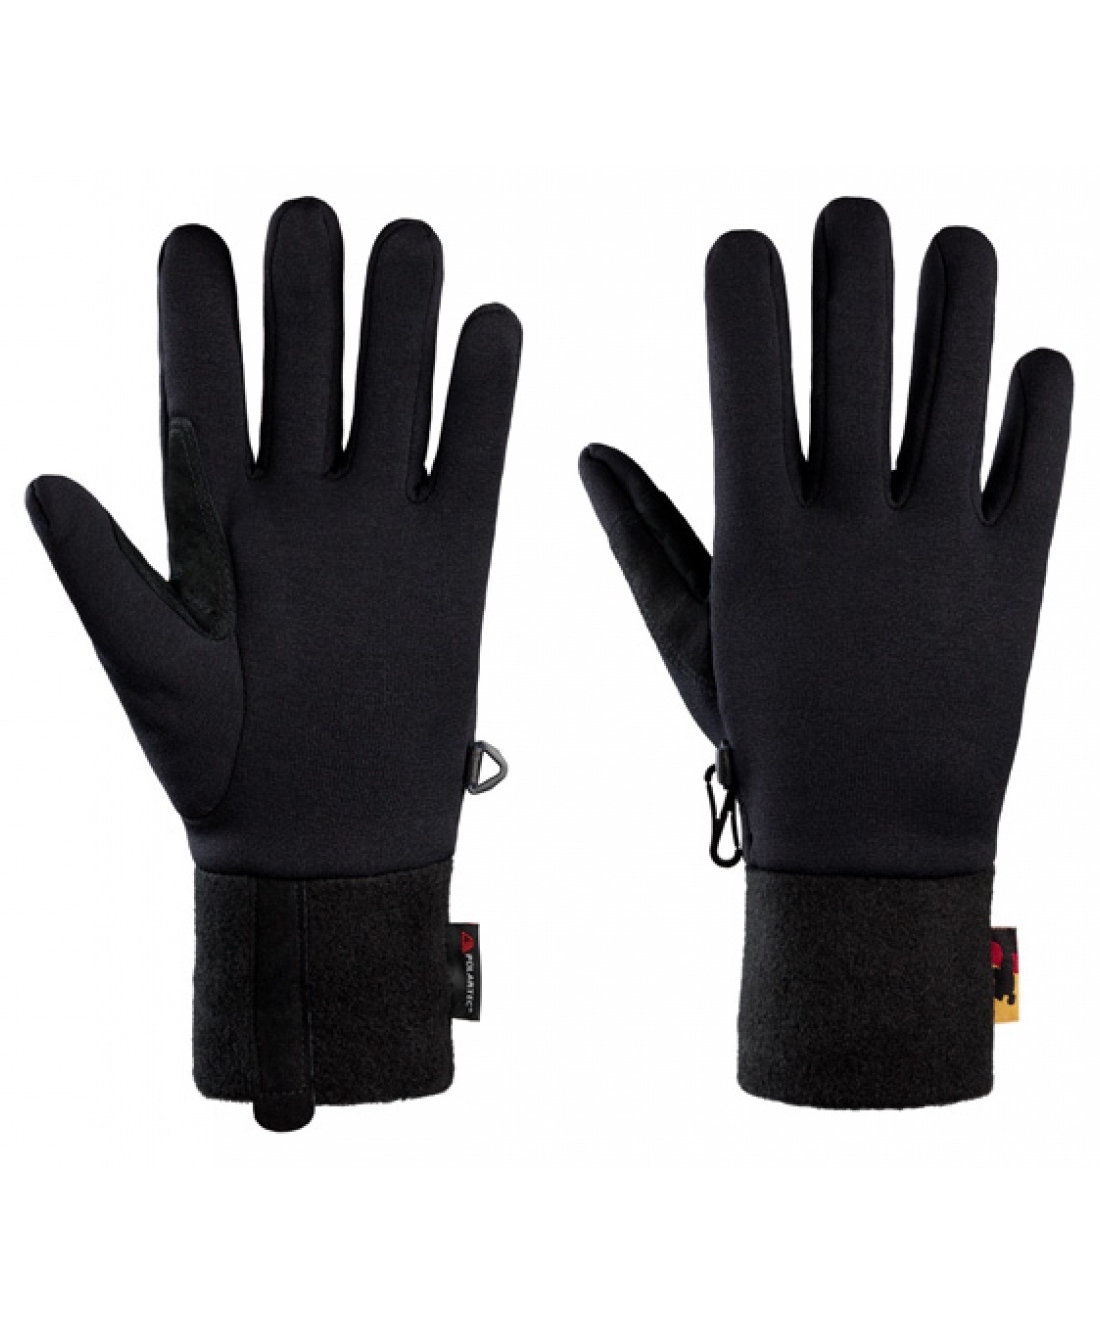 Перчатки унисекс Stretch Glove V2 черные, р. XL Bask. Цвет: черный